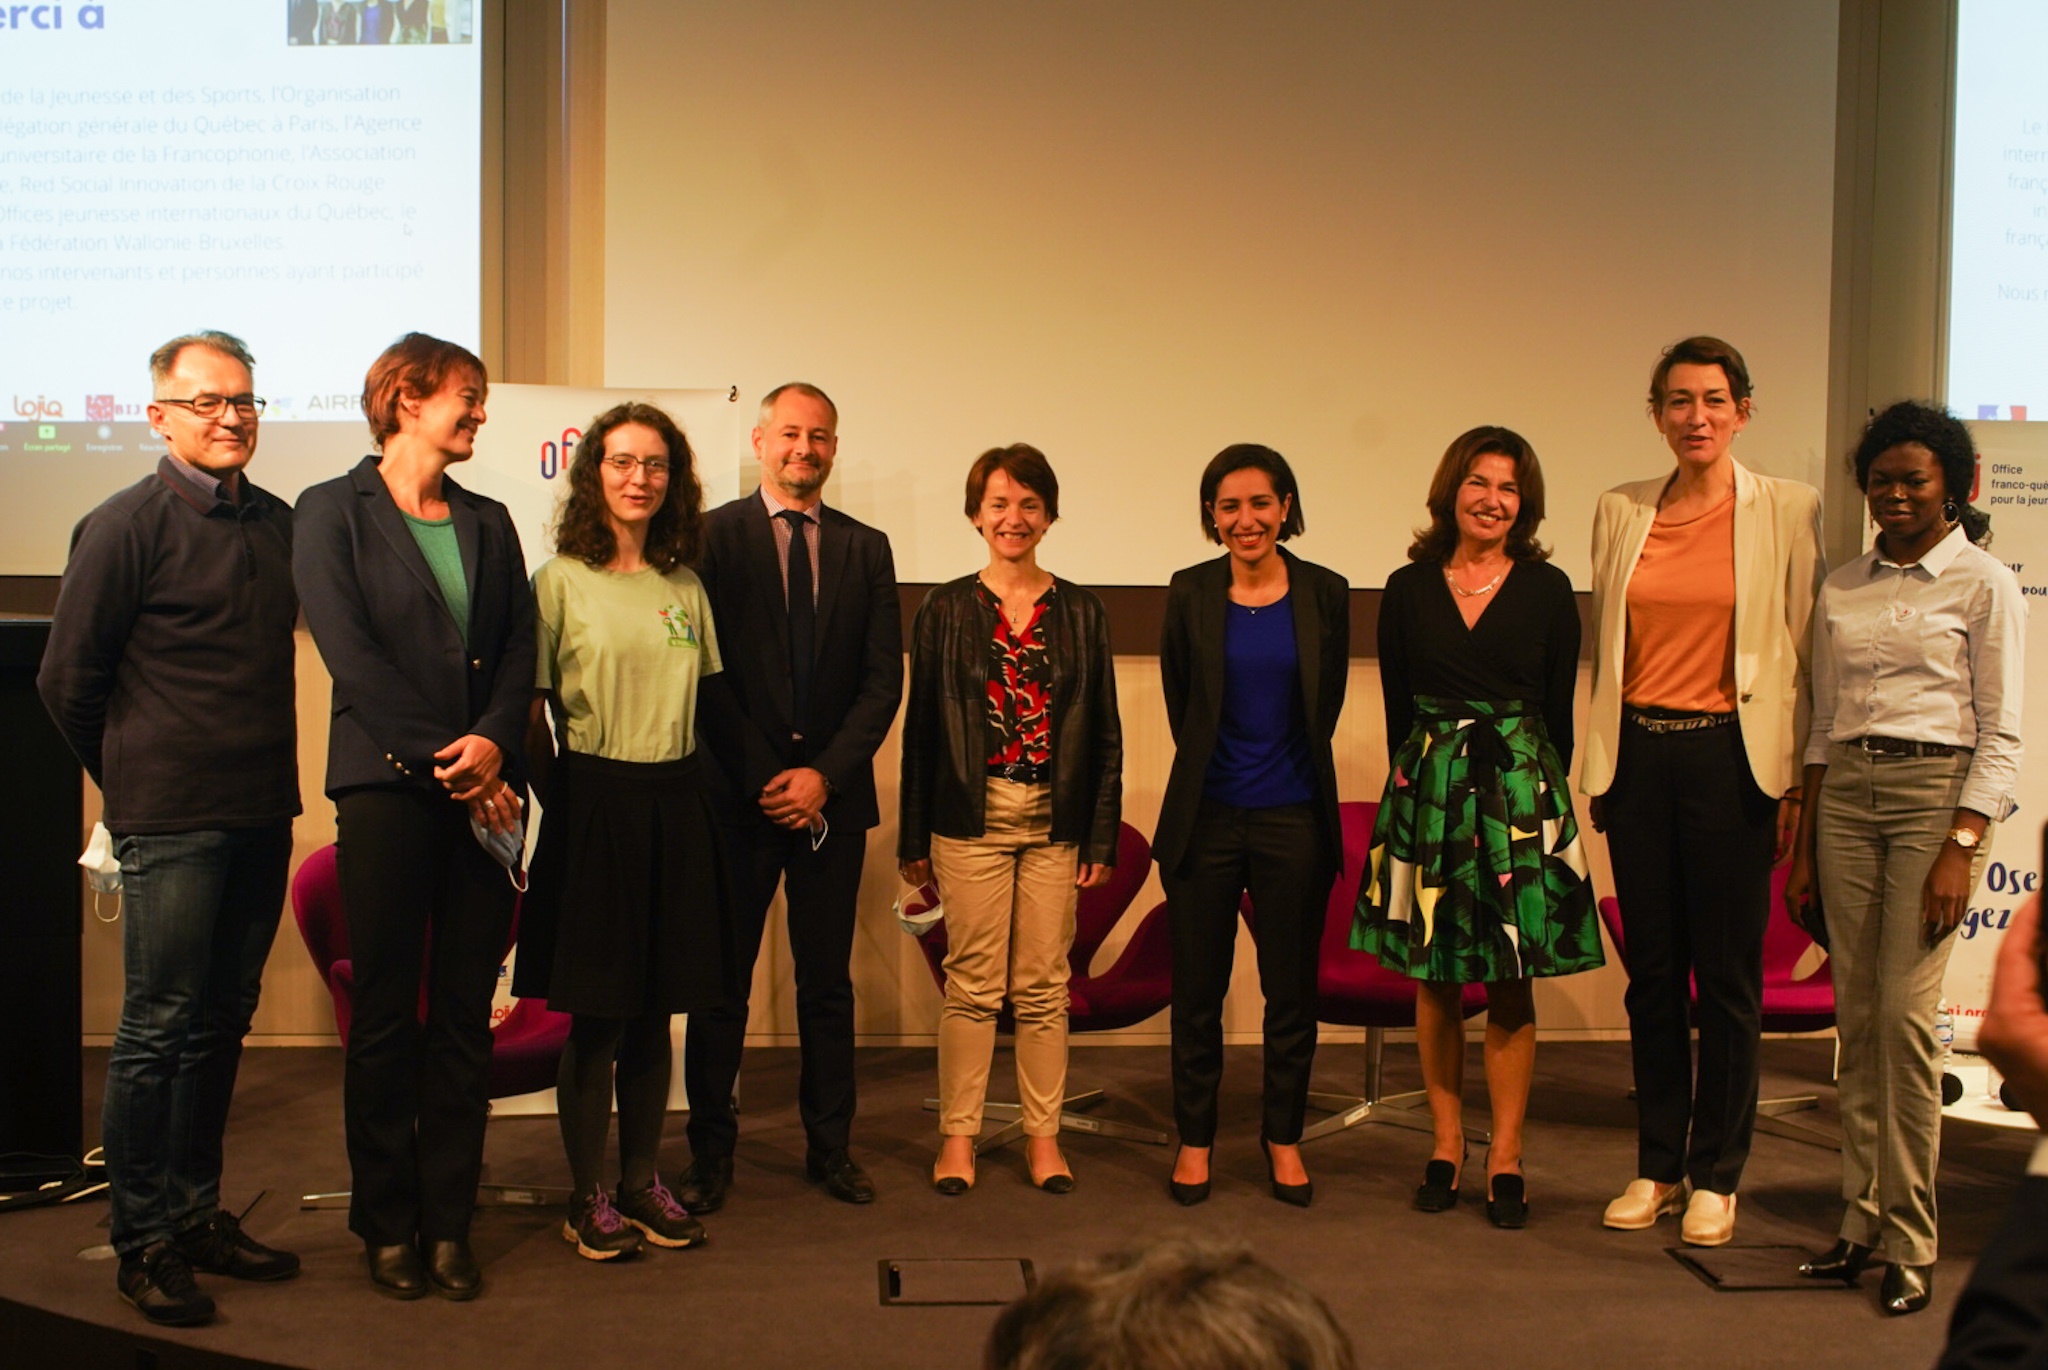 Ouverture des RIS 2021 en présence de Sarah el Hairy, Michèle Boisvert, Marie-Hélène Loison et Marianne Beseme